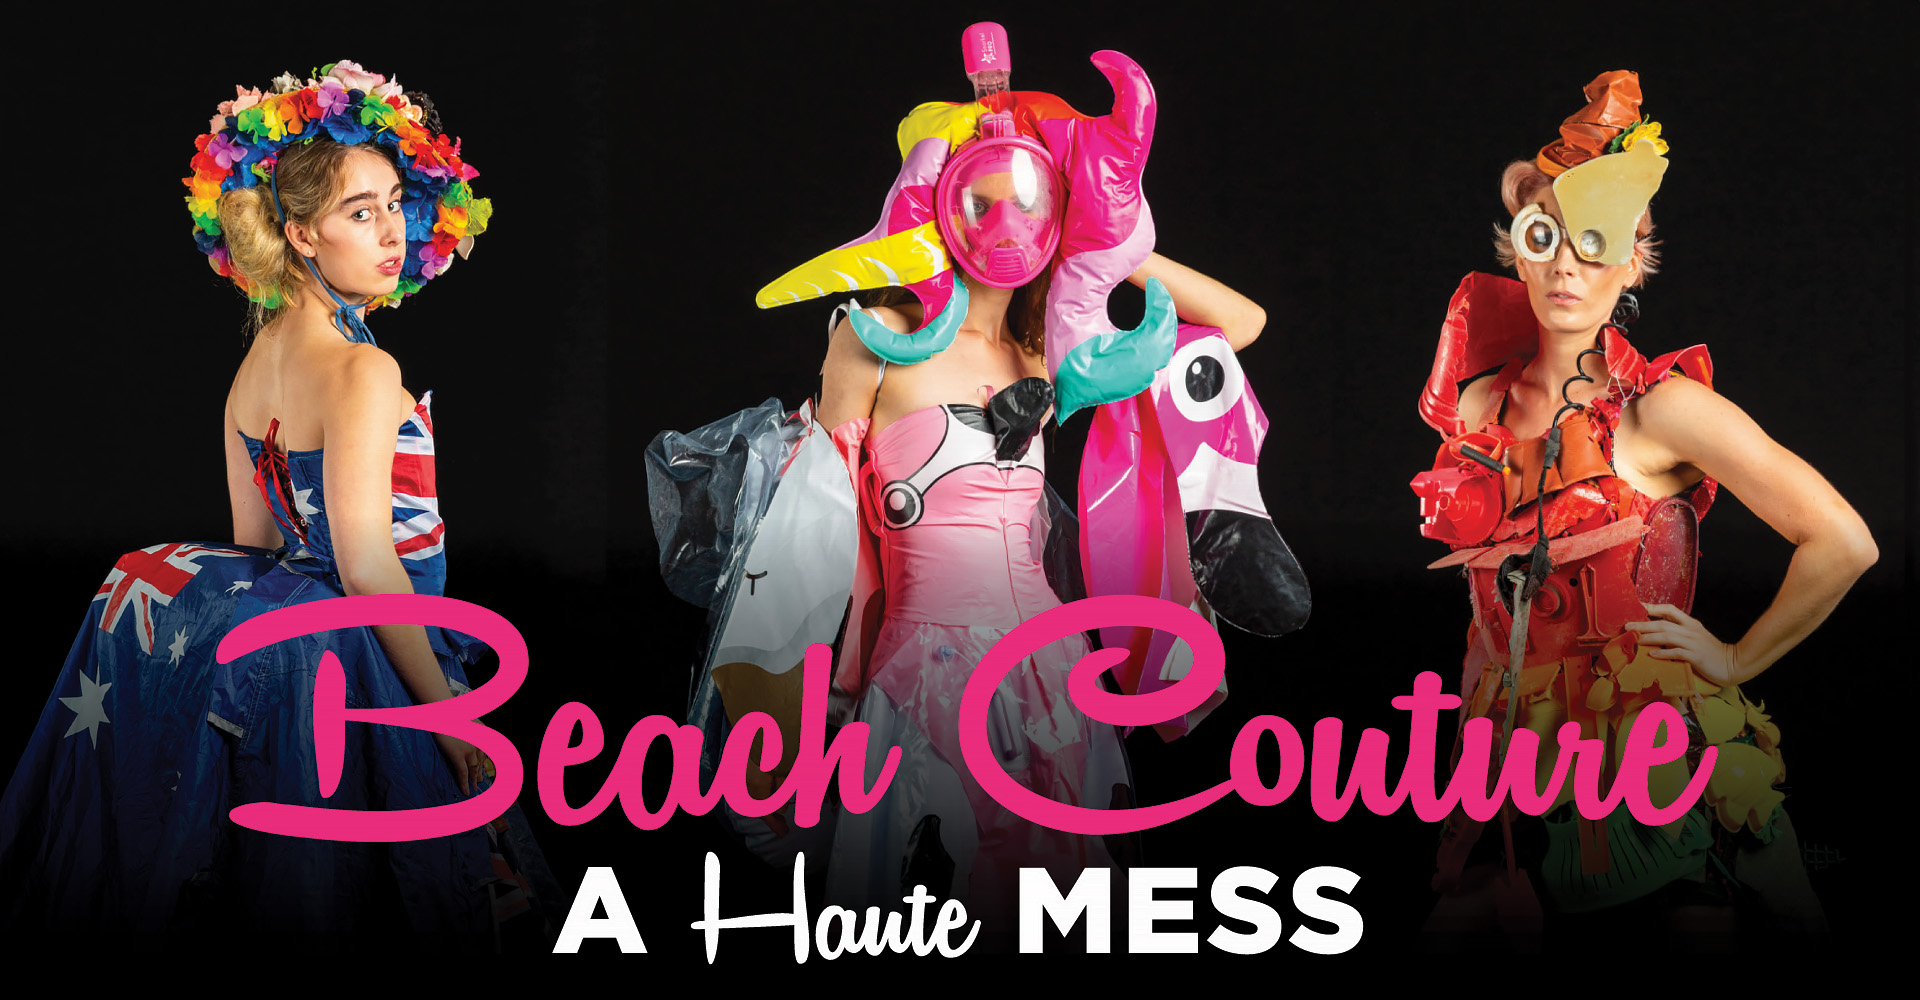 Beach Couture A Haute Mess